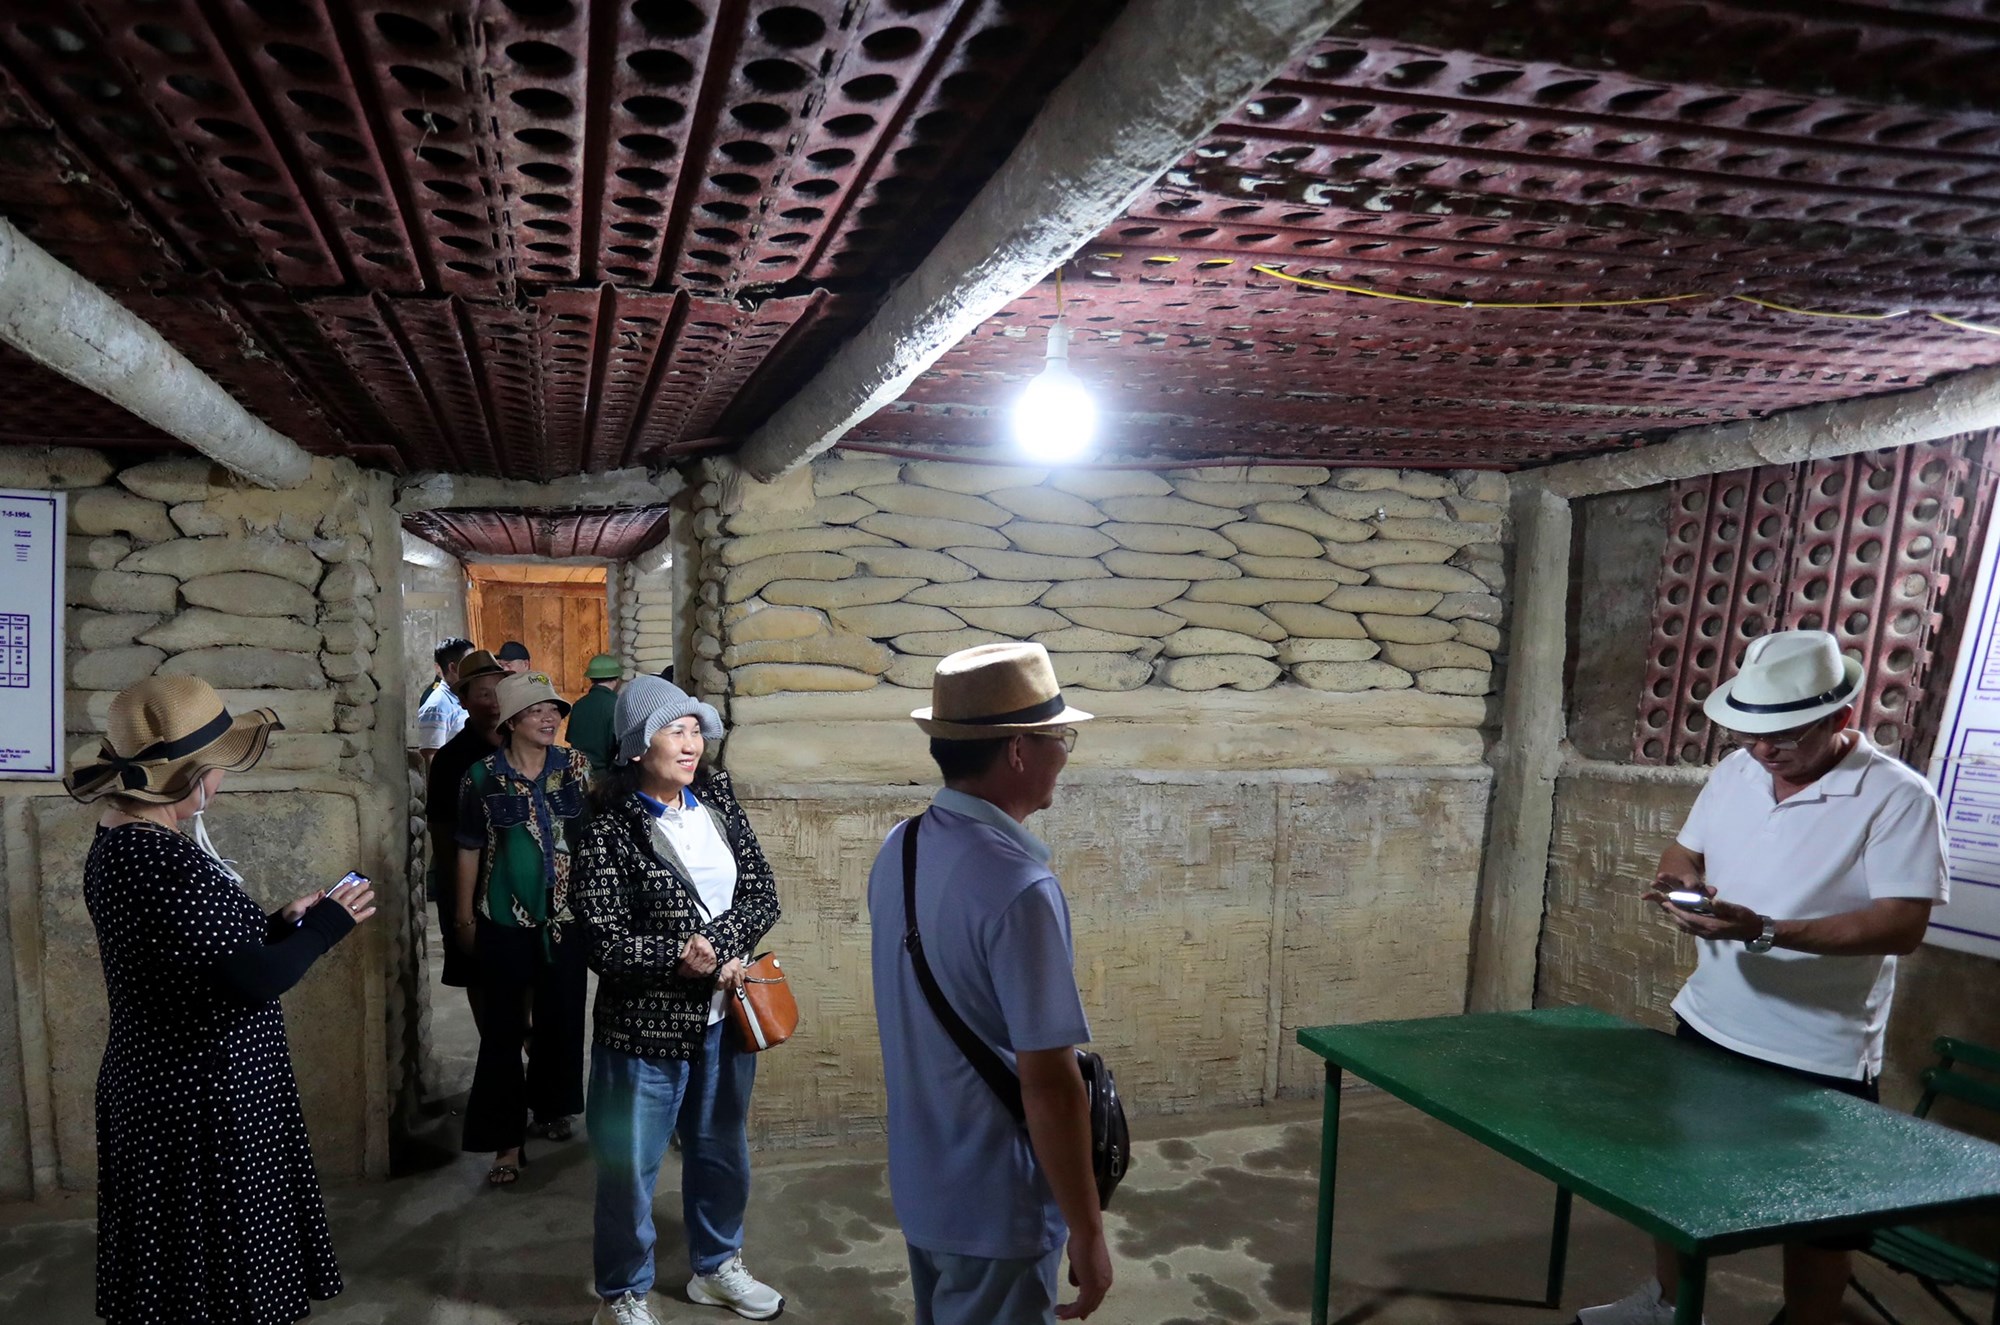 Căn hầm nổi tiếng ở Điện Biên, nơi bắt sống tướng De Castries - ảnh 4